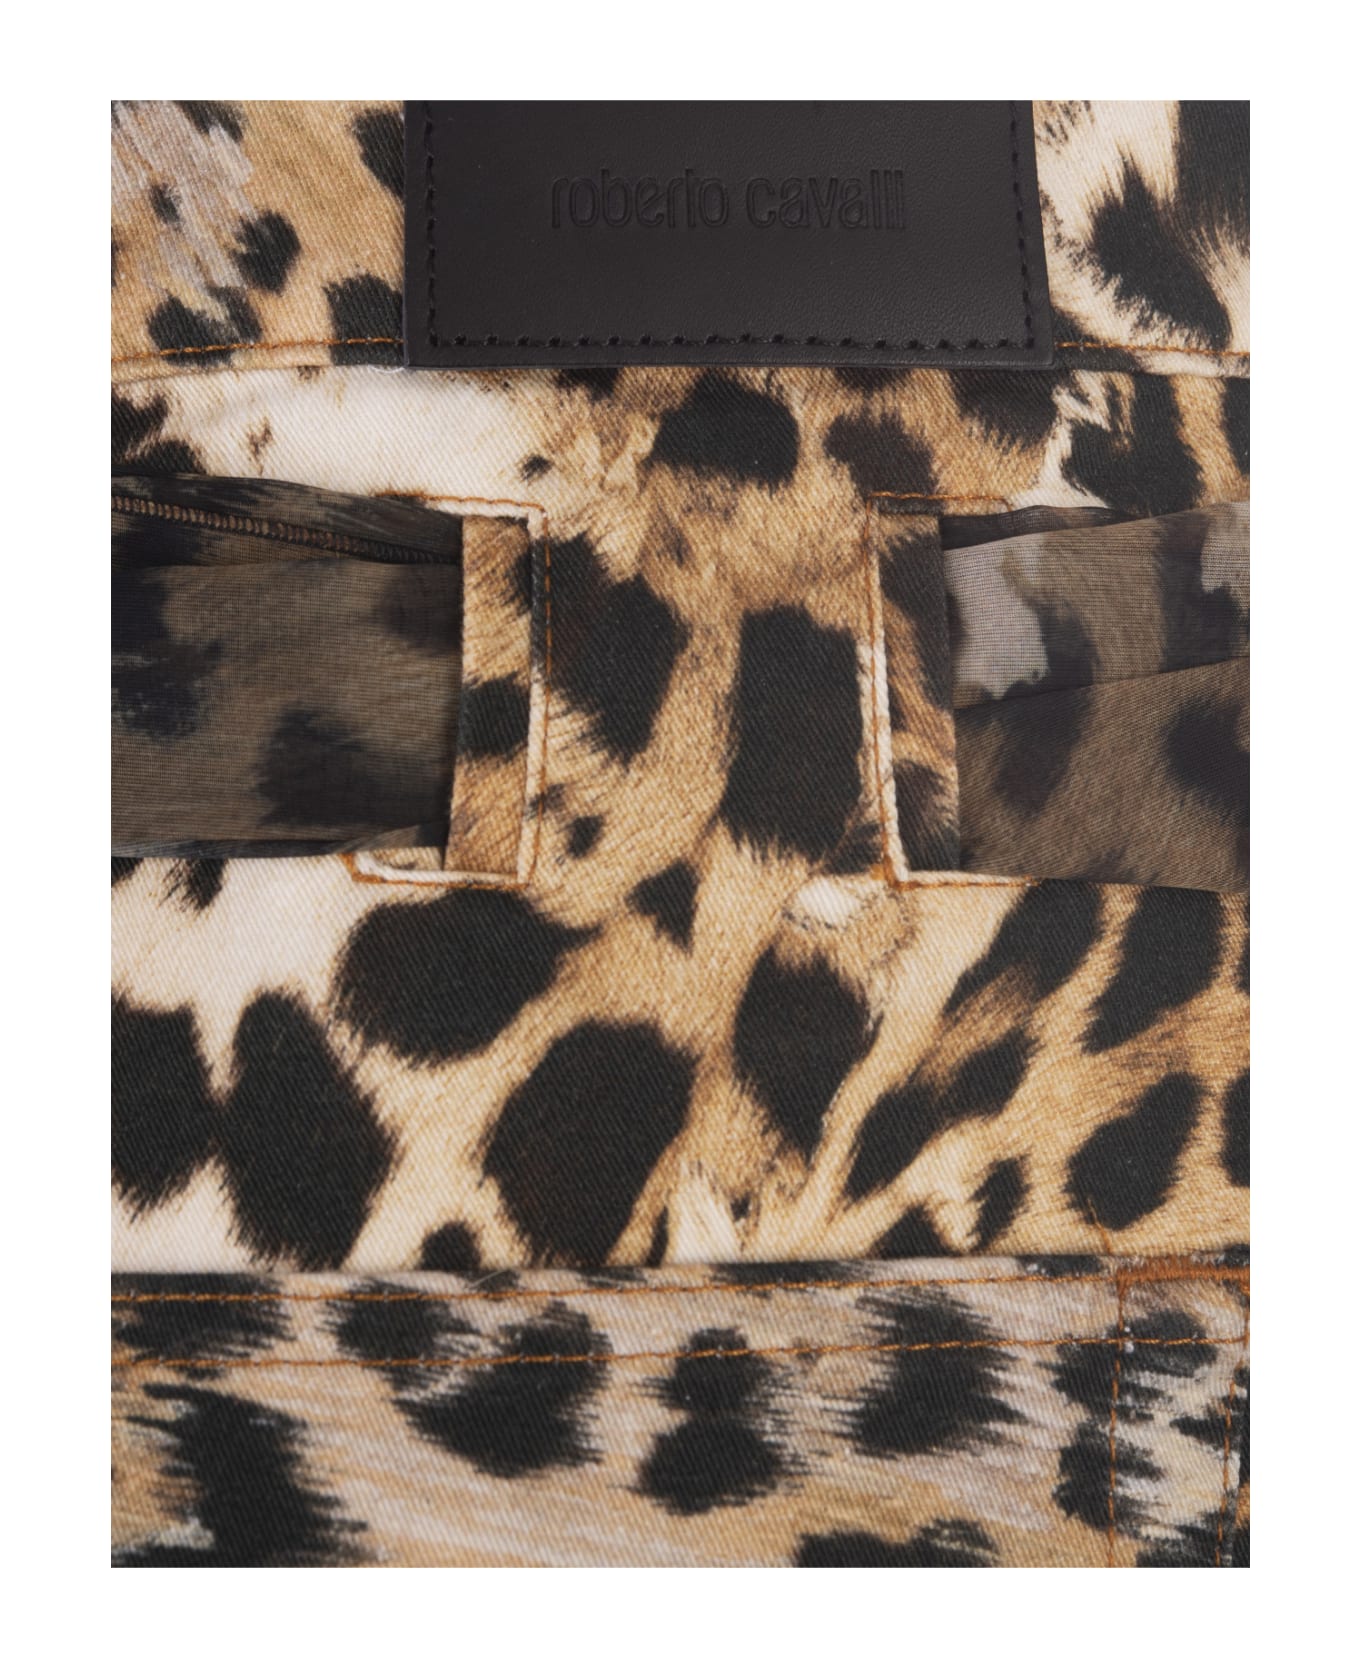 Roberto Cavalli Jaguar Skin Print Shorts - Brown ショートパンツ